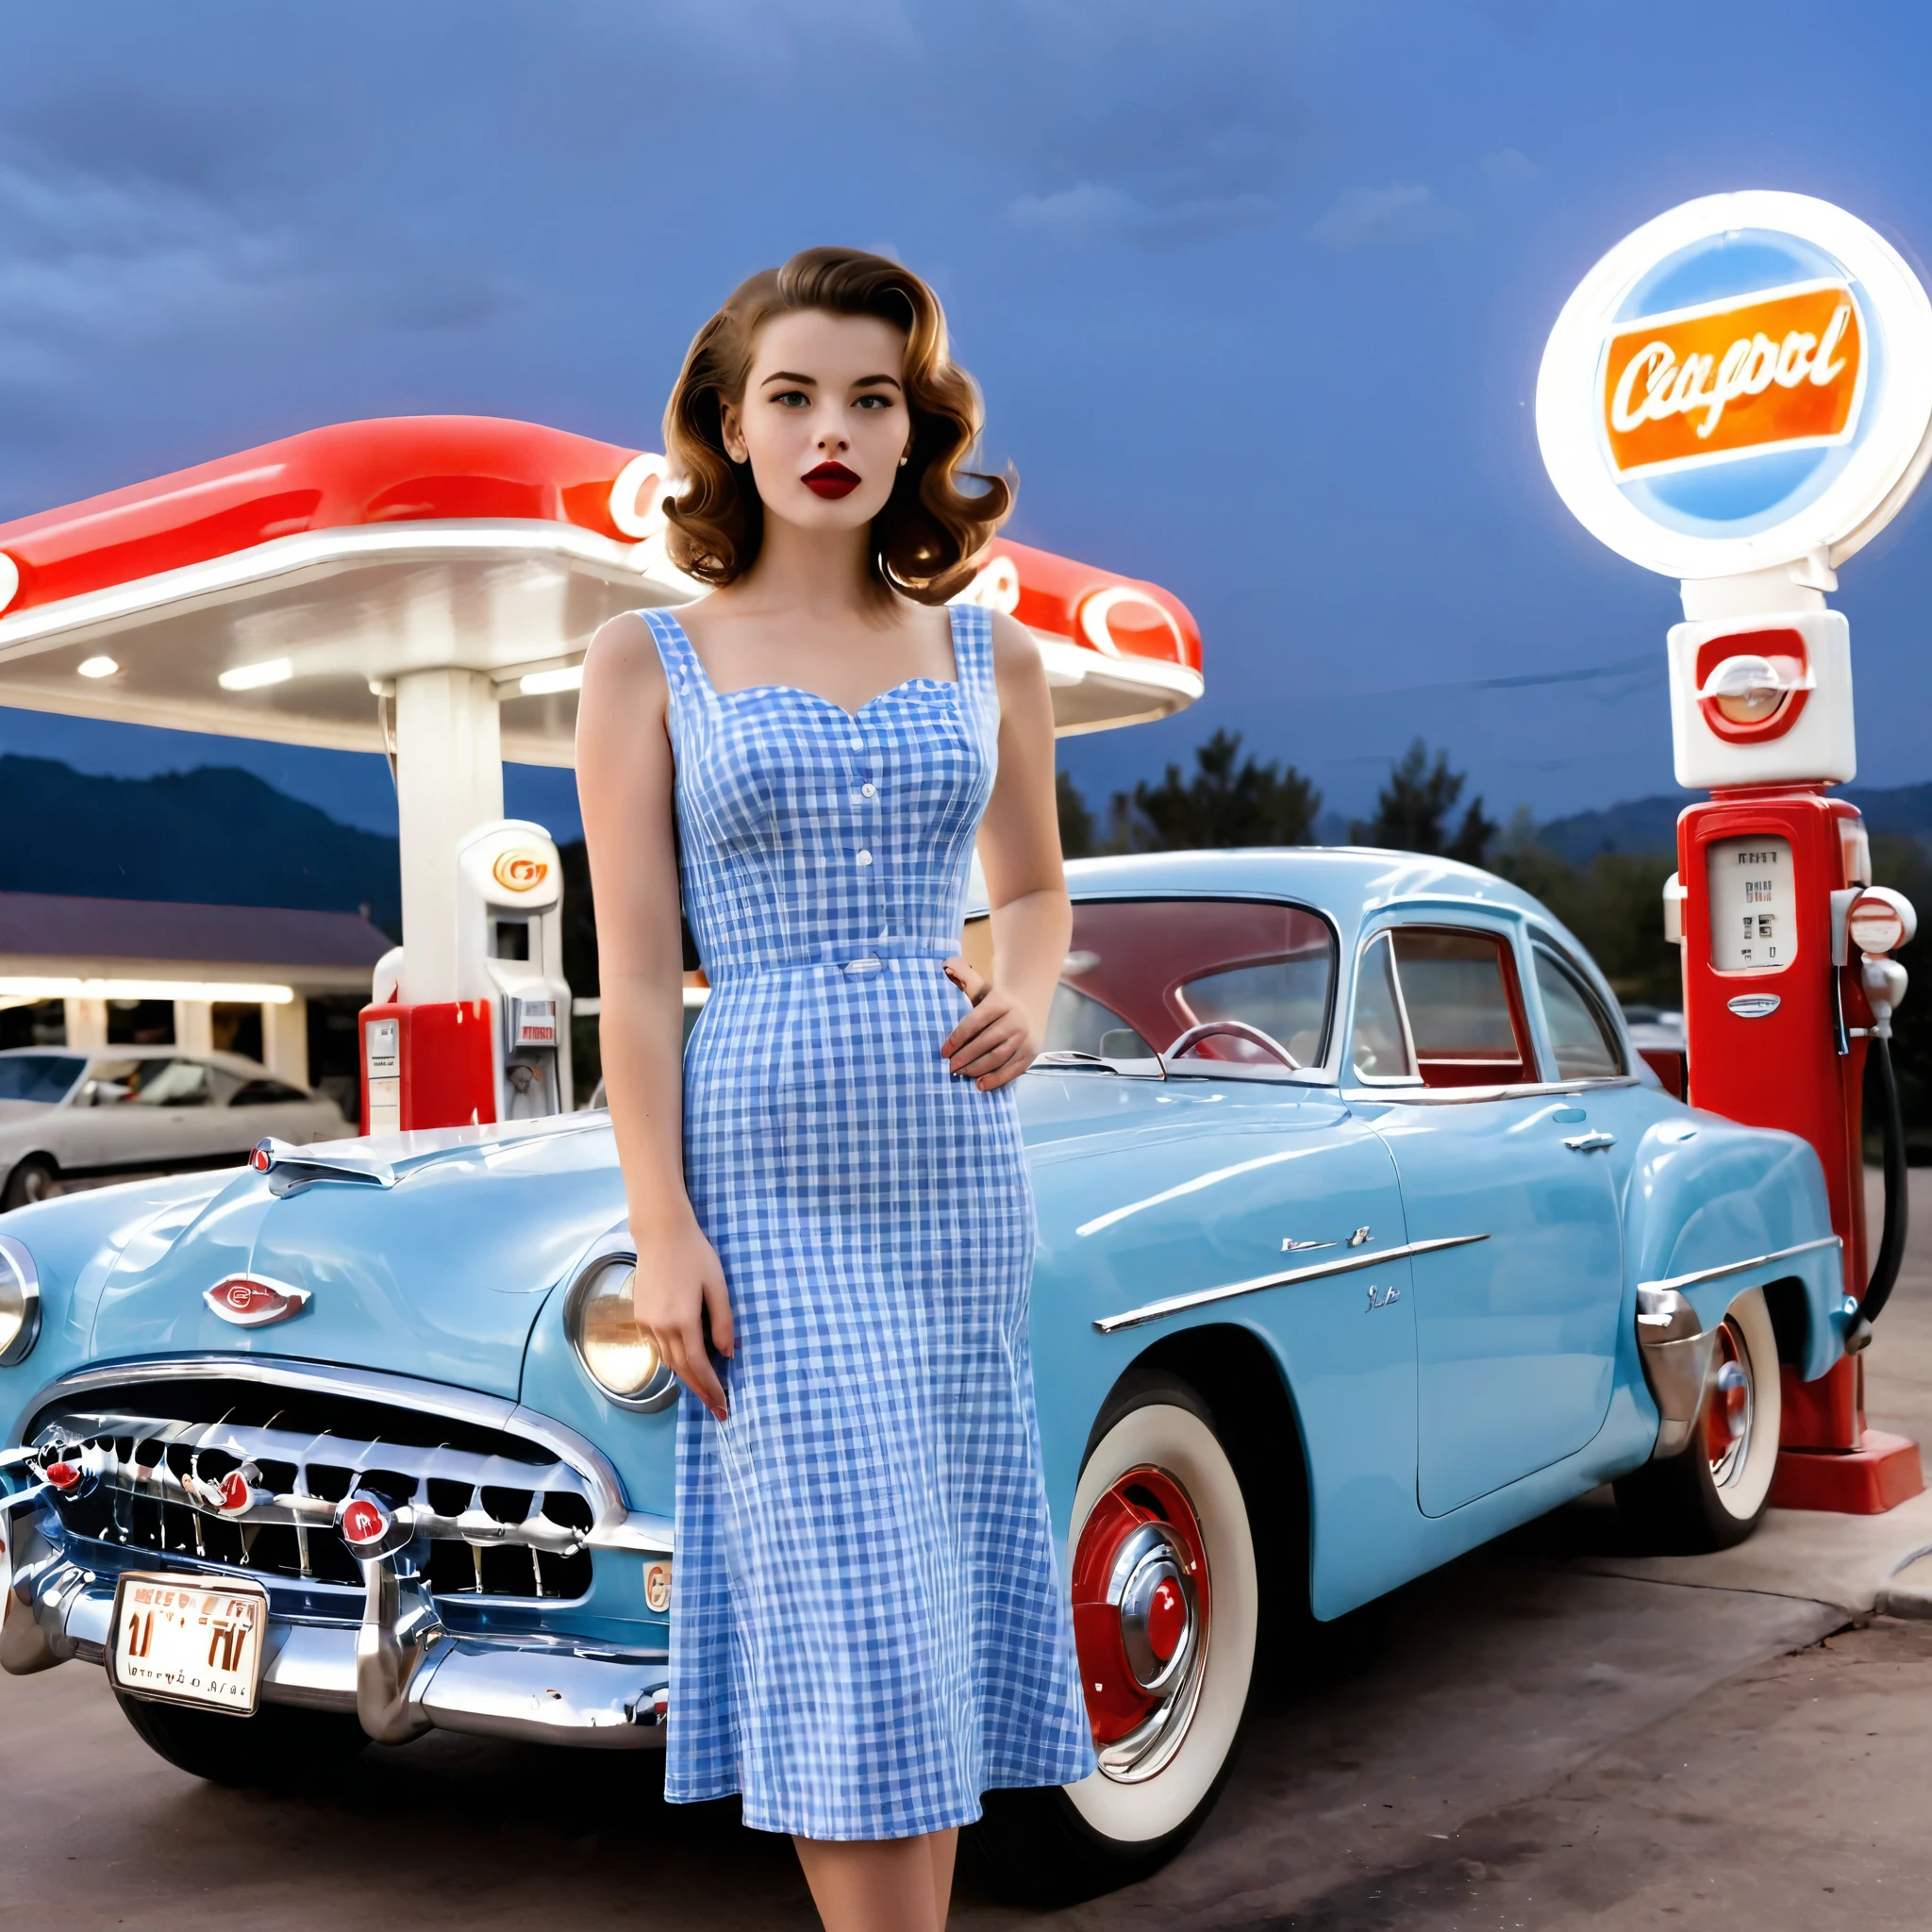 1950年代のヴィンテージスタイルの美しい若い女性が、レトロなガソリンスタンドのクラシックな青い車の前で自信を持って立っています。. 彼女は体にフィットする, 彼女の体型を強調する青いギンガムドレス, 赤い口紅とエレガントな, カールした茶色の髪. ガソリンスタンドは懐かしい雰囲気がある, 赤と白のアクセントとクラシックなガソリンポンプ付き. 上の夜空は澄んでいます, シーンに穏やかな雰囲気を加える. 全体的な雰囲気は懐かしく華やかです, 20世紀半ばのアメリカの真髄を捉えた.